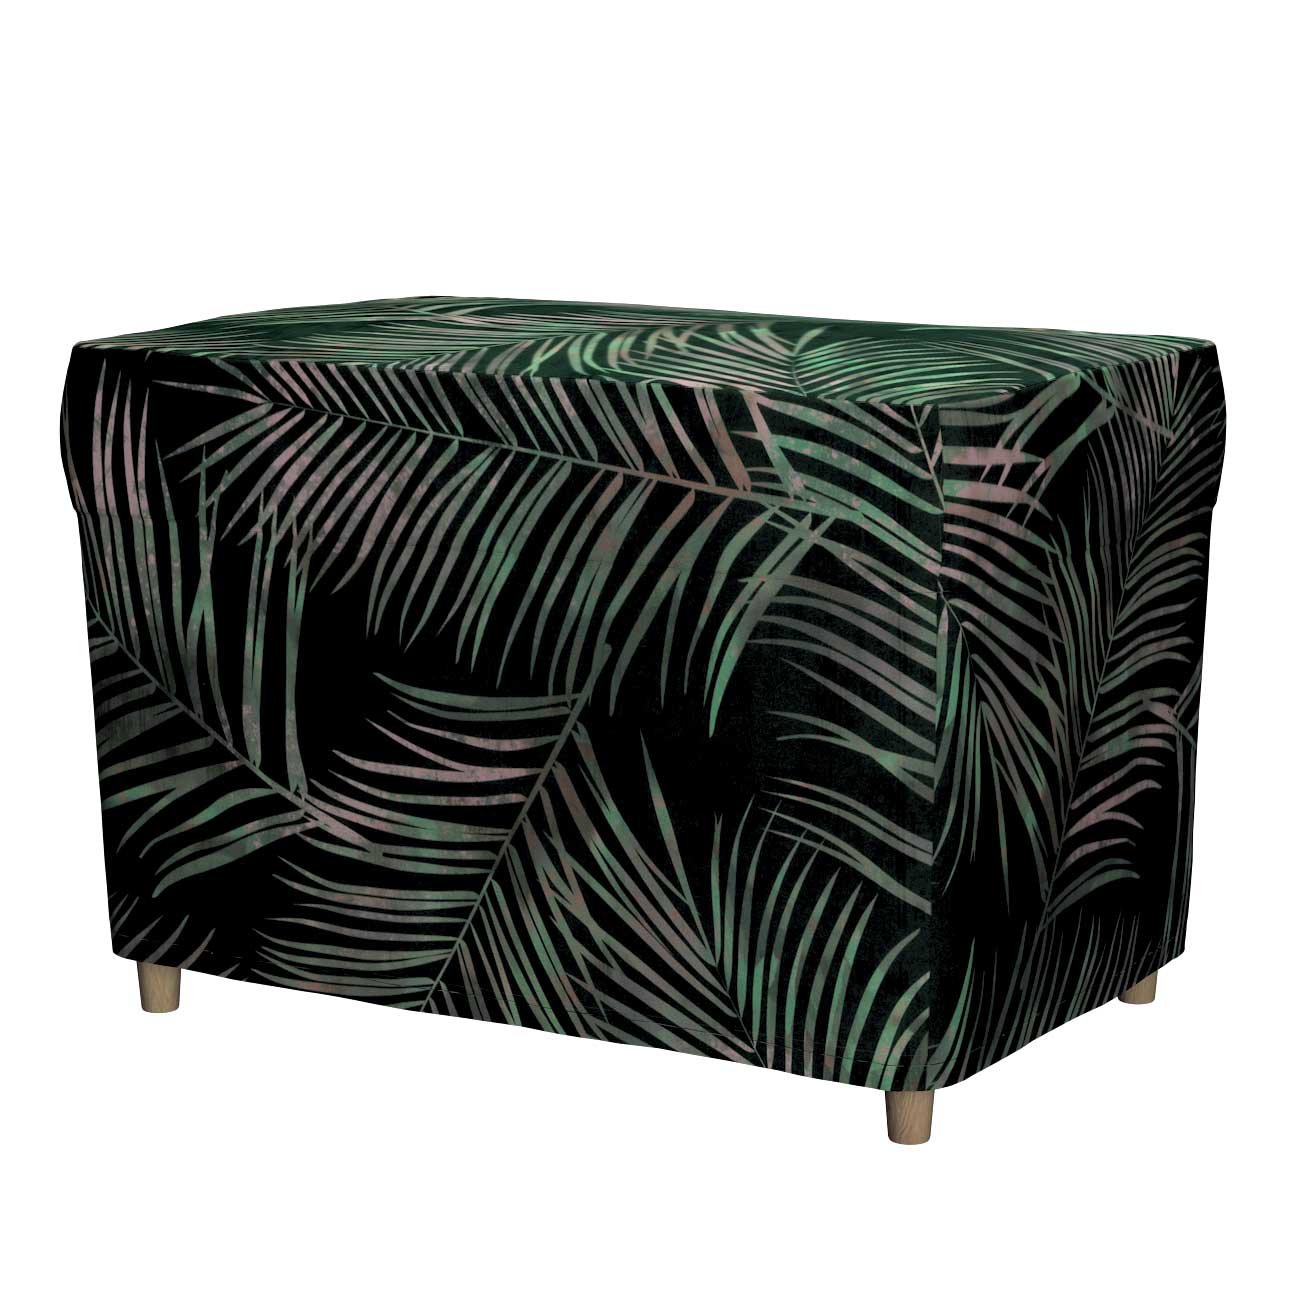 Dekoria Potah na podnožku Strandmon, stylizované palmové listy na zeleném podkladu, 60 x 42 x 41 cm, Velvet, 704-21